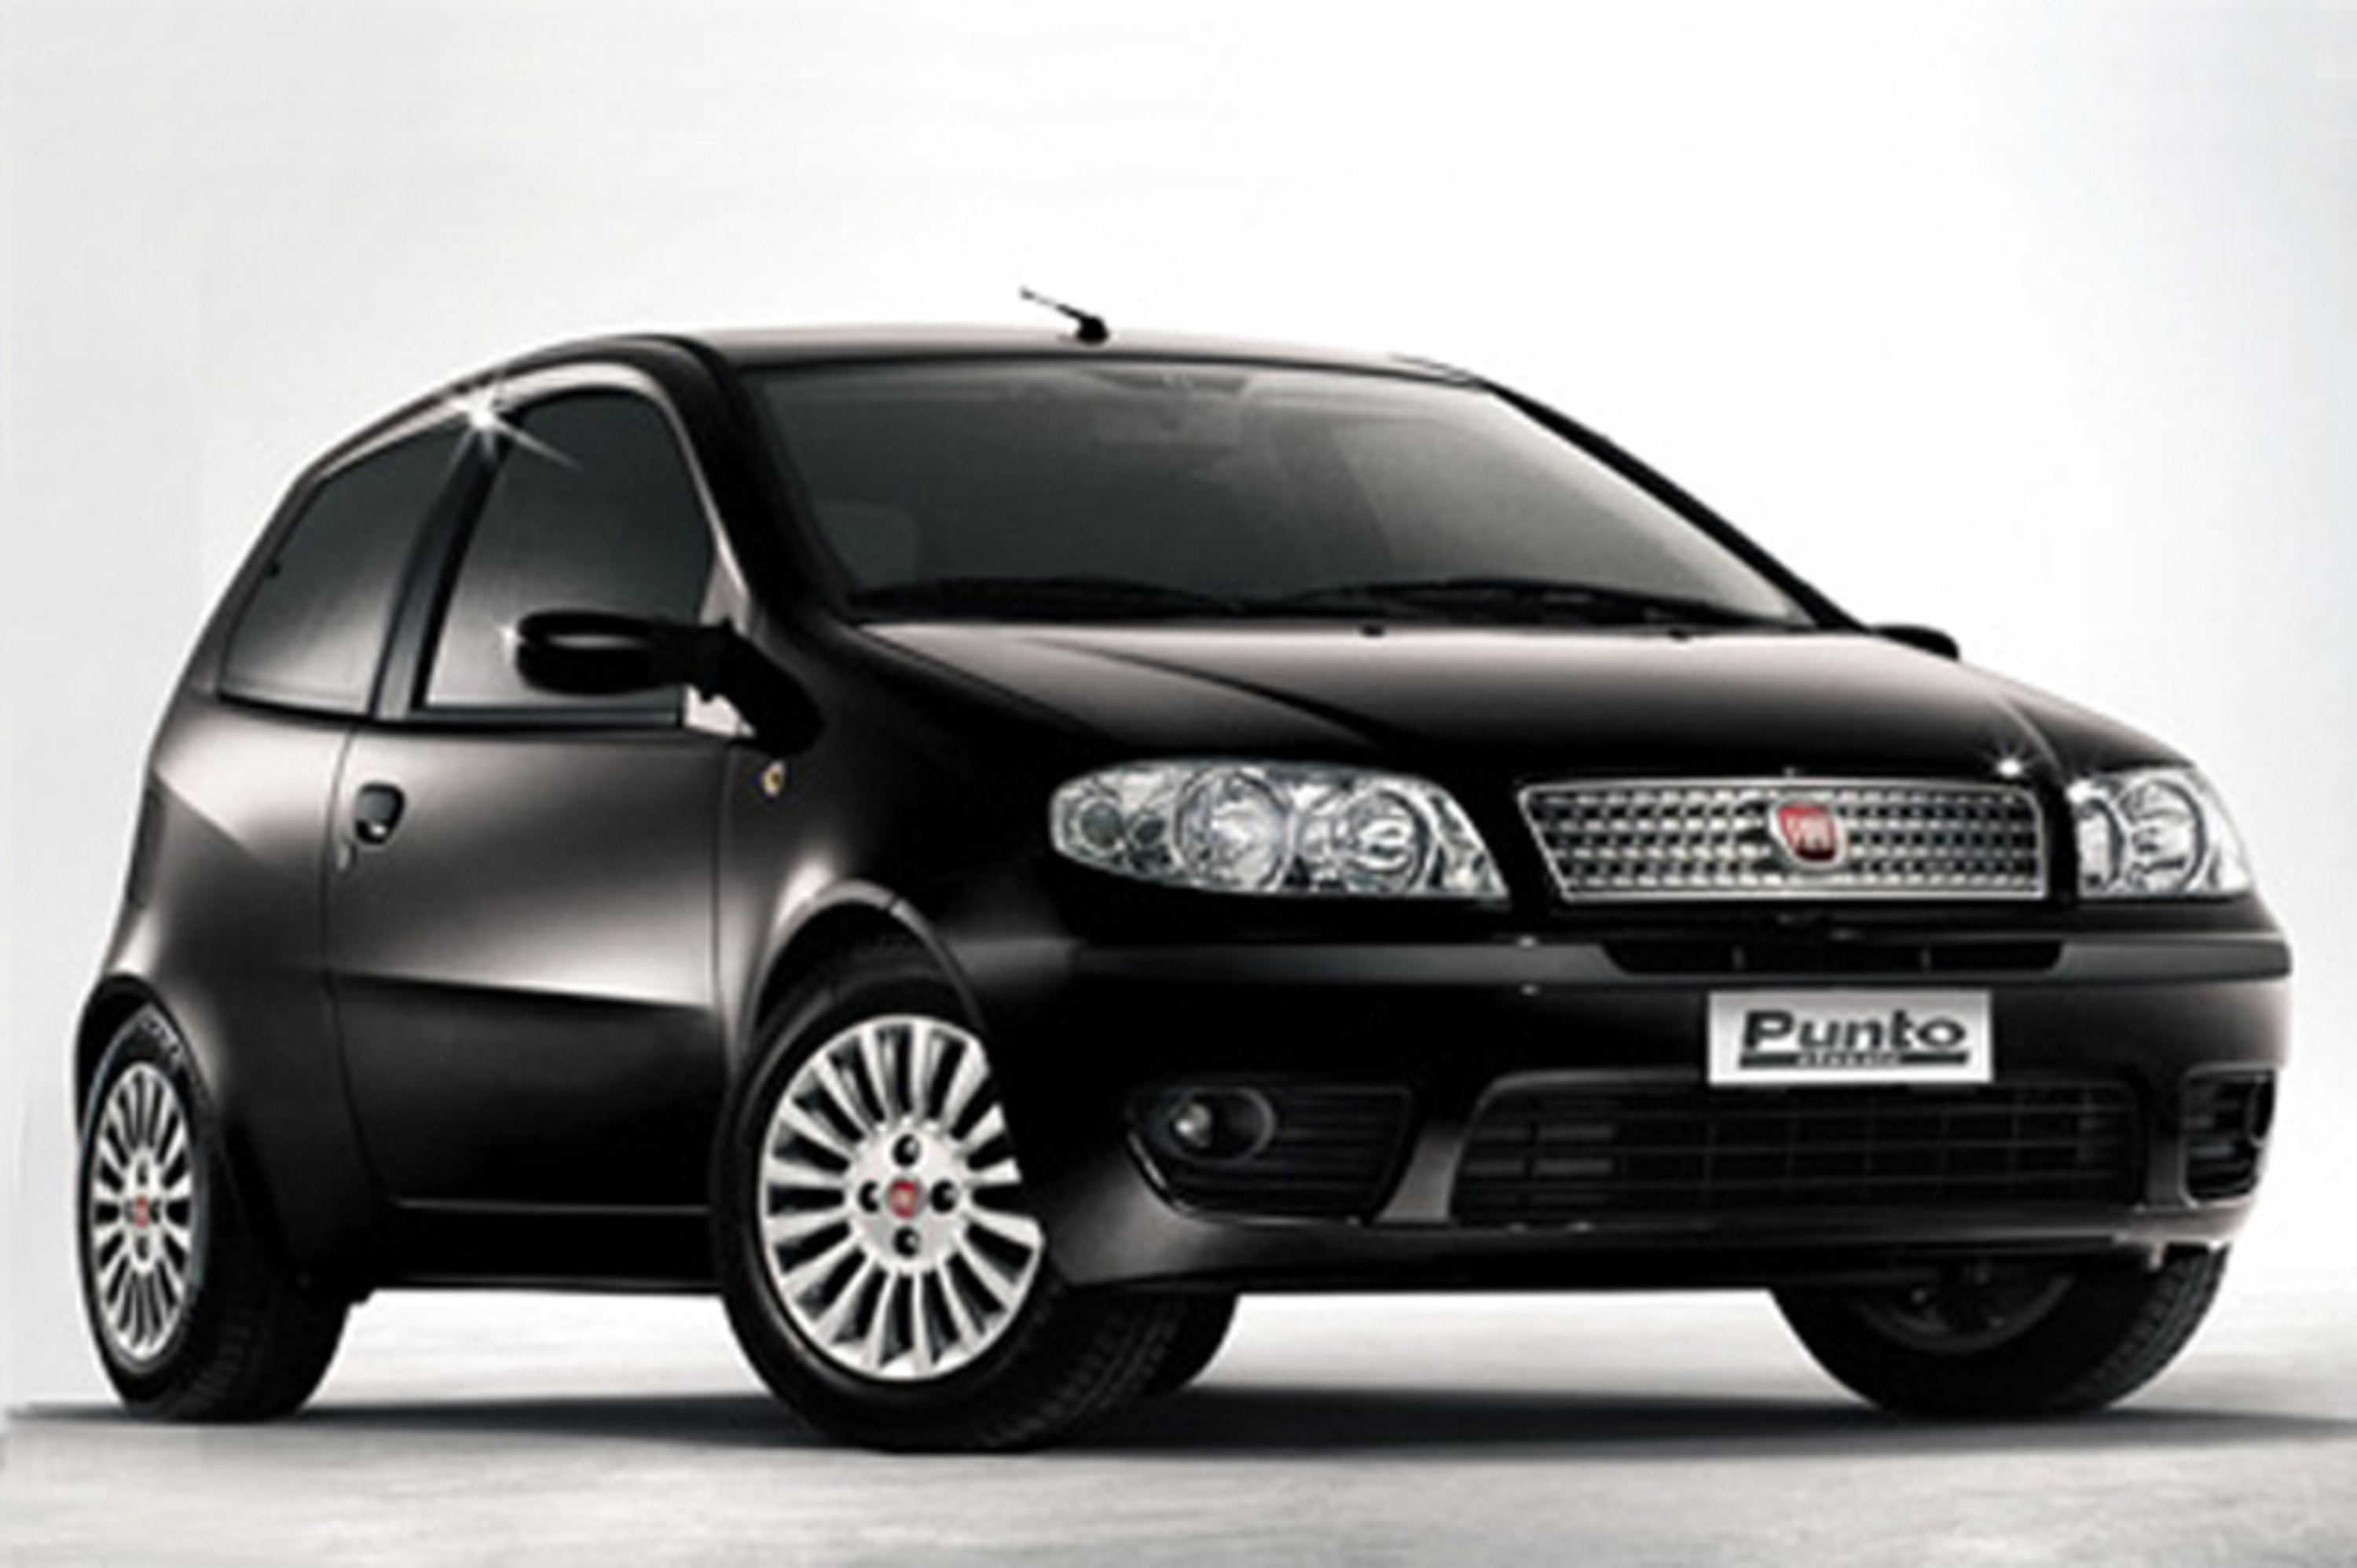 Fiat Punto Classic (2007-11)